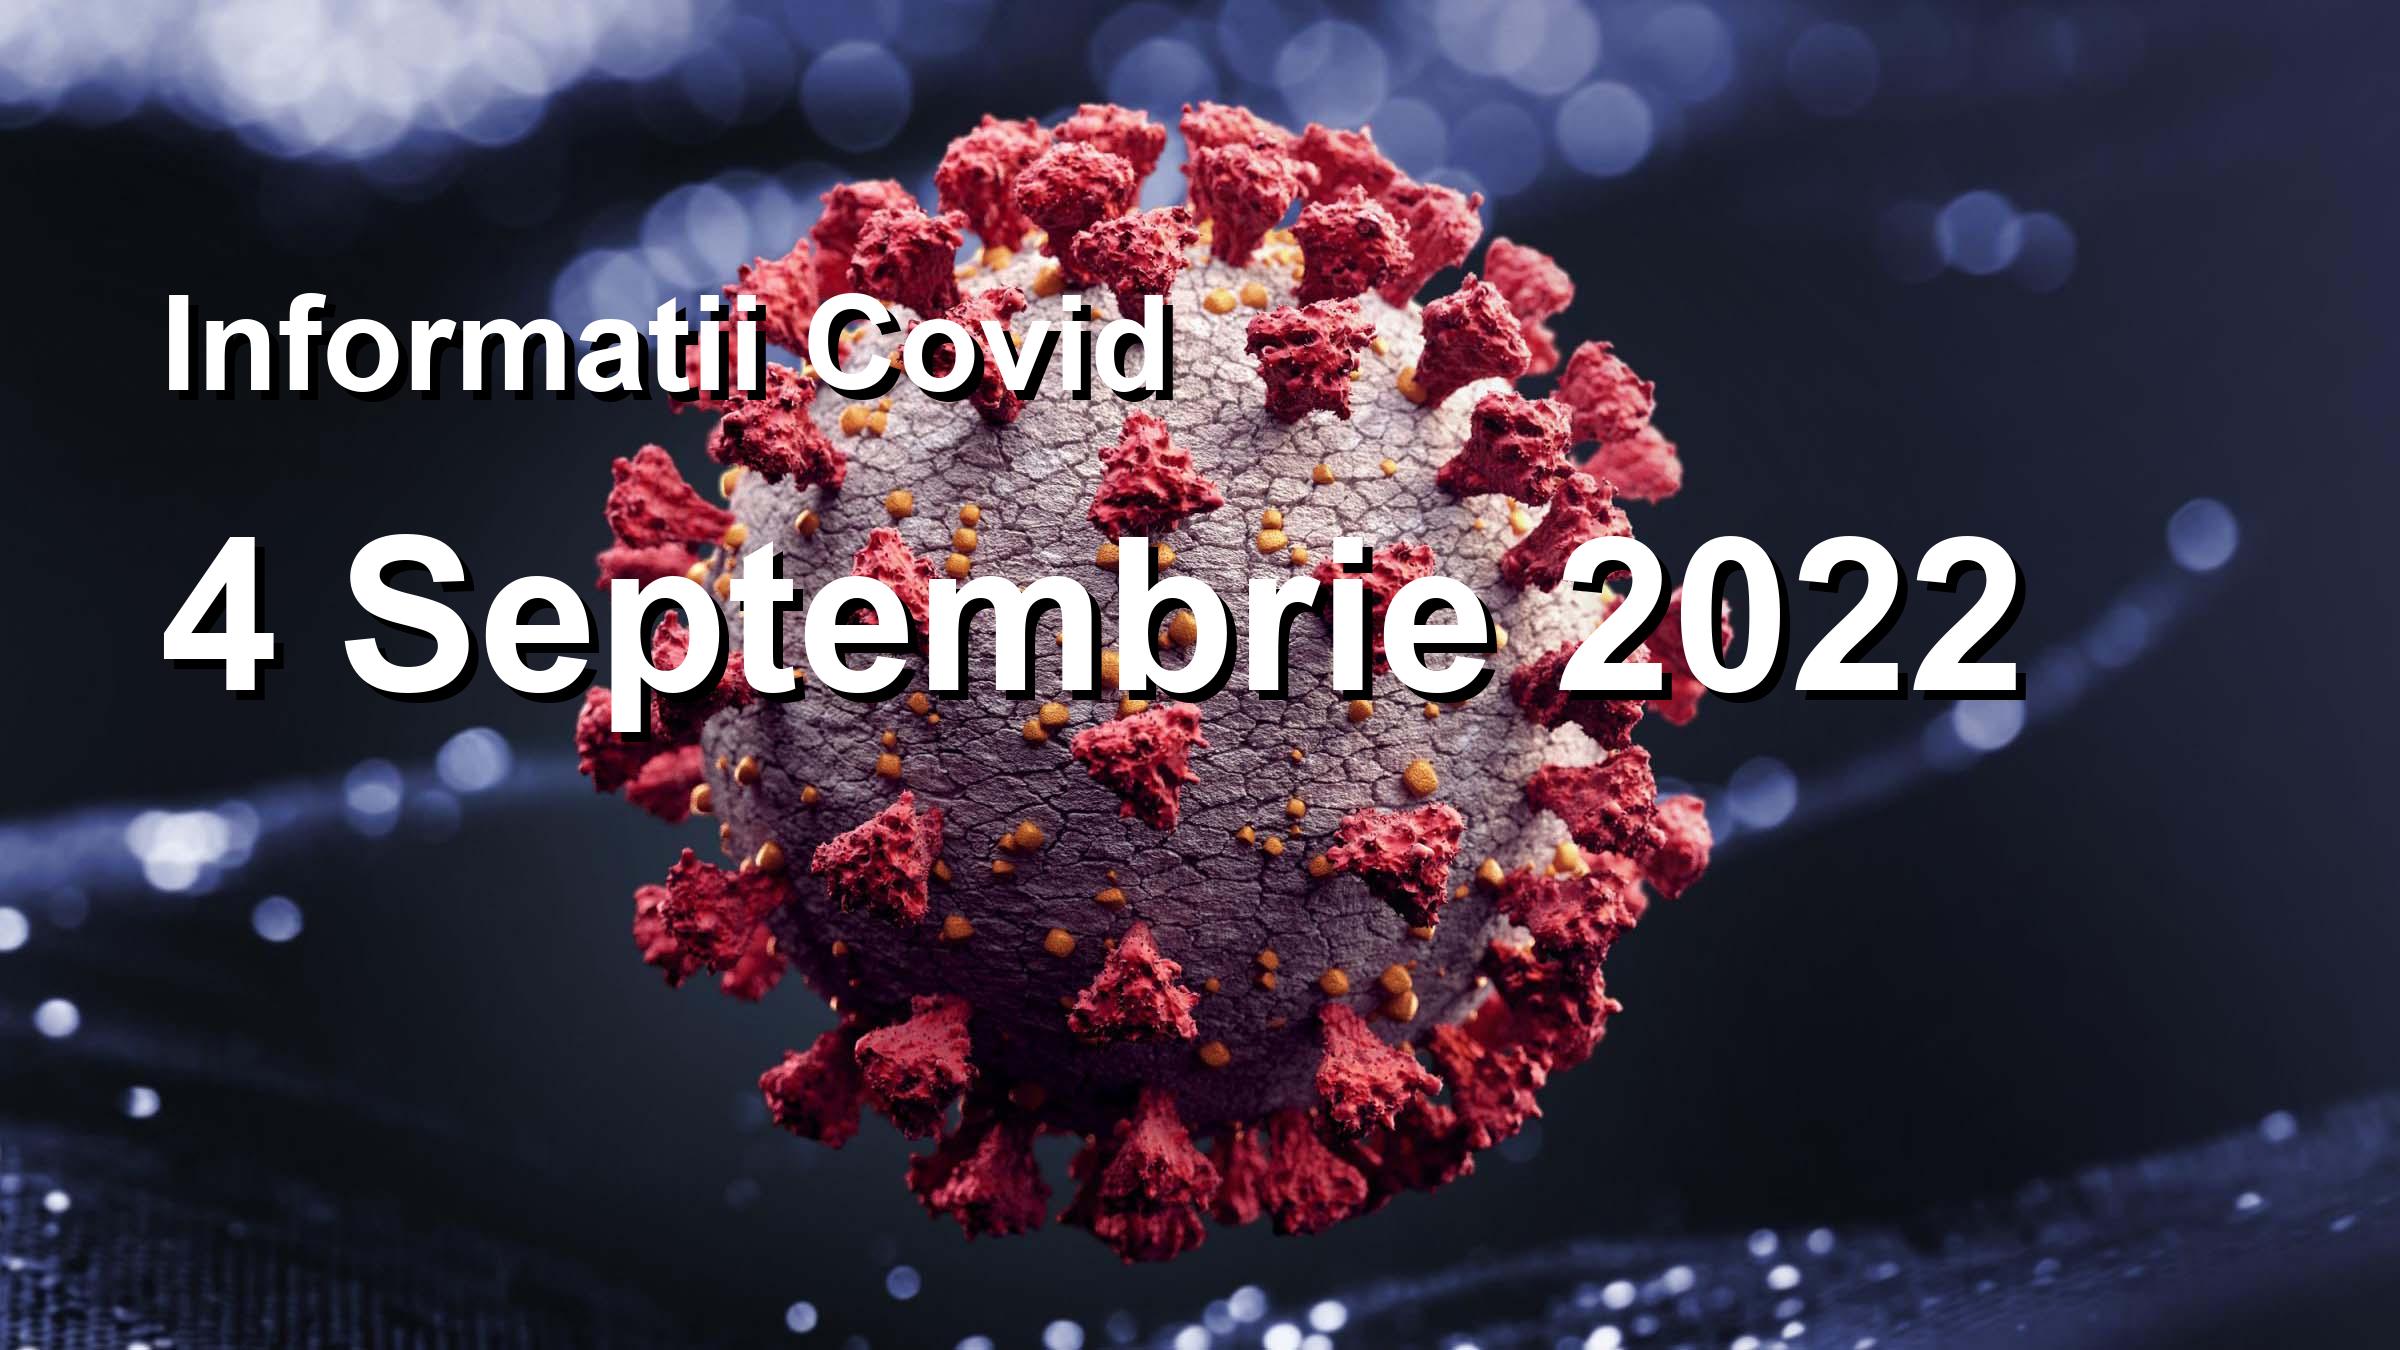 Informatii Covid-19 pentru 4 Septembrie 2022: 981 infectari, 7298 teste. | Coronavirus Romania